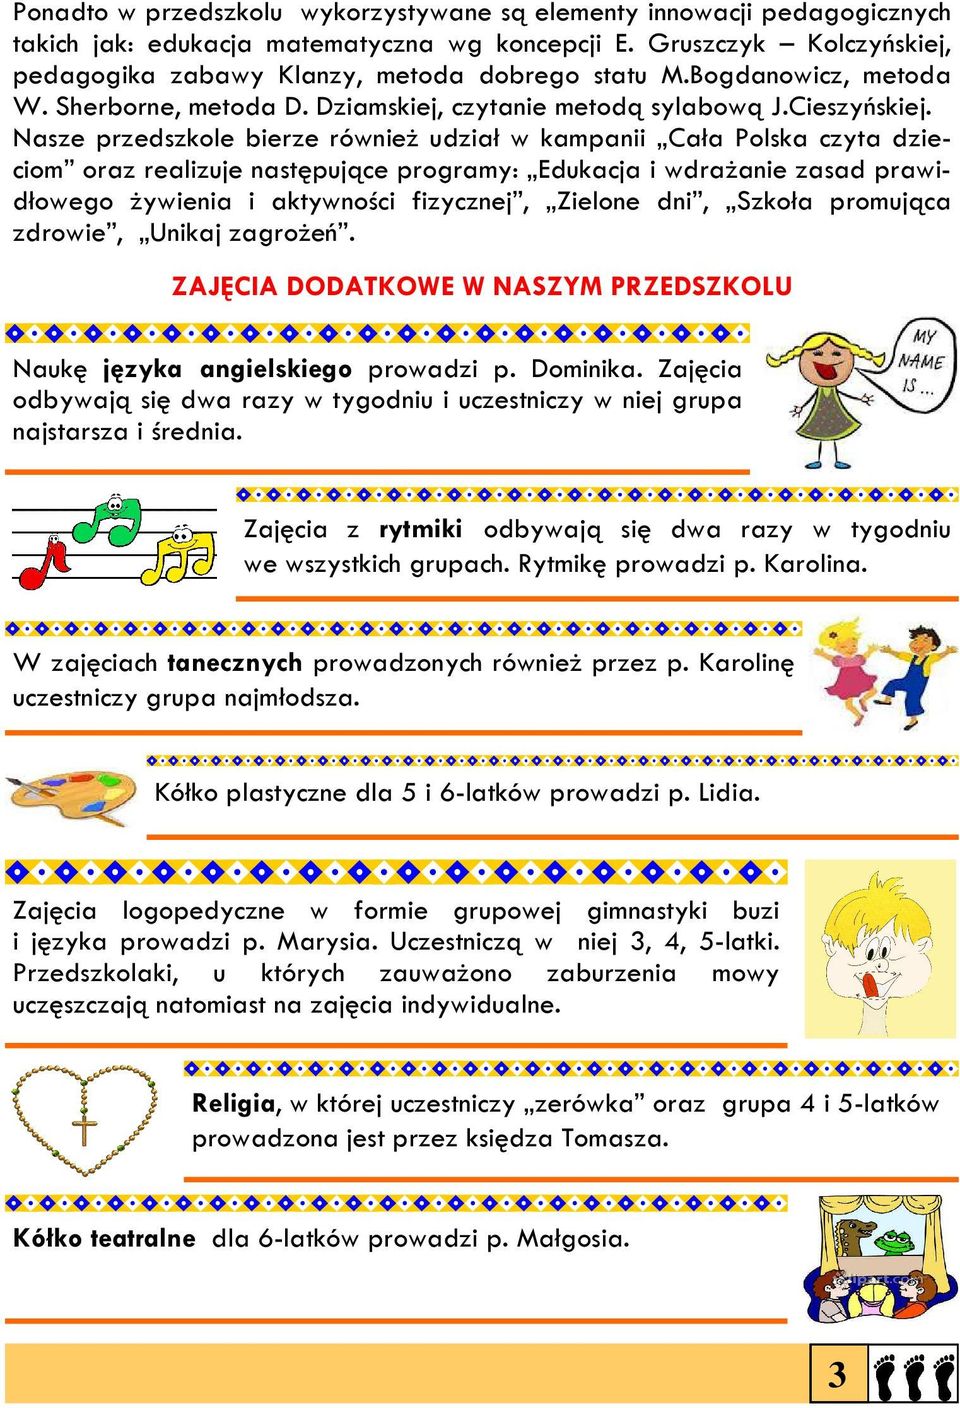 Nasze przedszkole bierze również udział w kampanii Cała Polska czyta dzieciom oraz realizuje następujące programy: Edukacja i wdrażanie zasad prawidłowego żywienia i aktywności fizycznej, Zielone